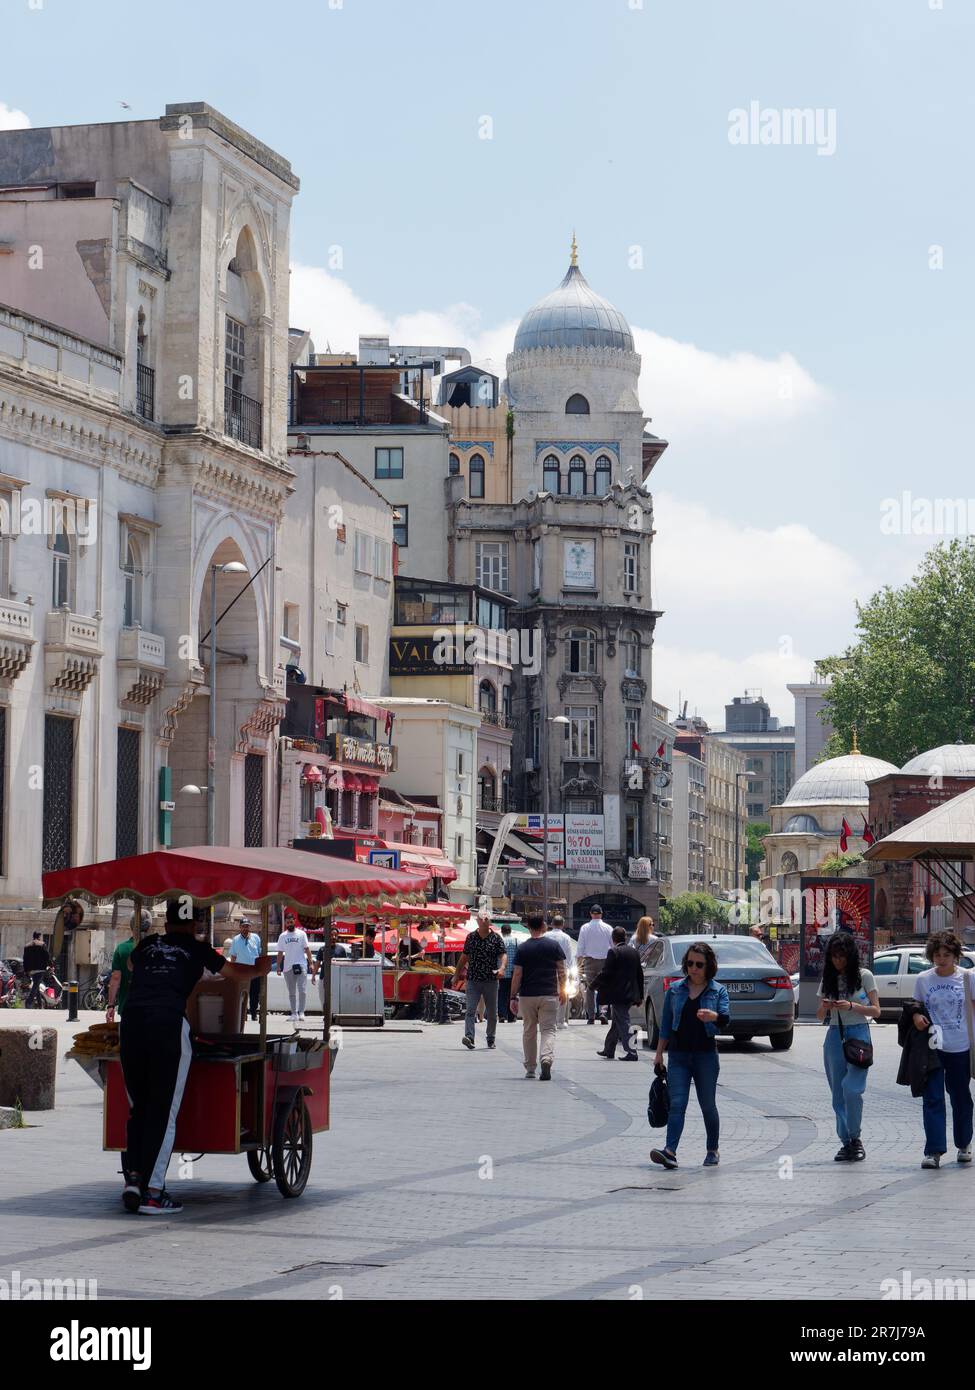 Rue à Istanbul dans le quartier de Fatih avec des touristes et un chariot distributeur rouge Banque D'Images